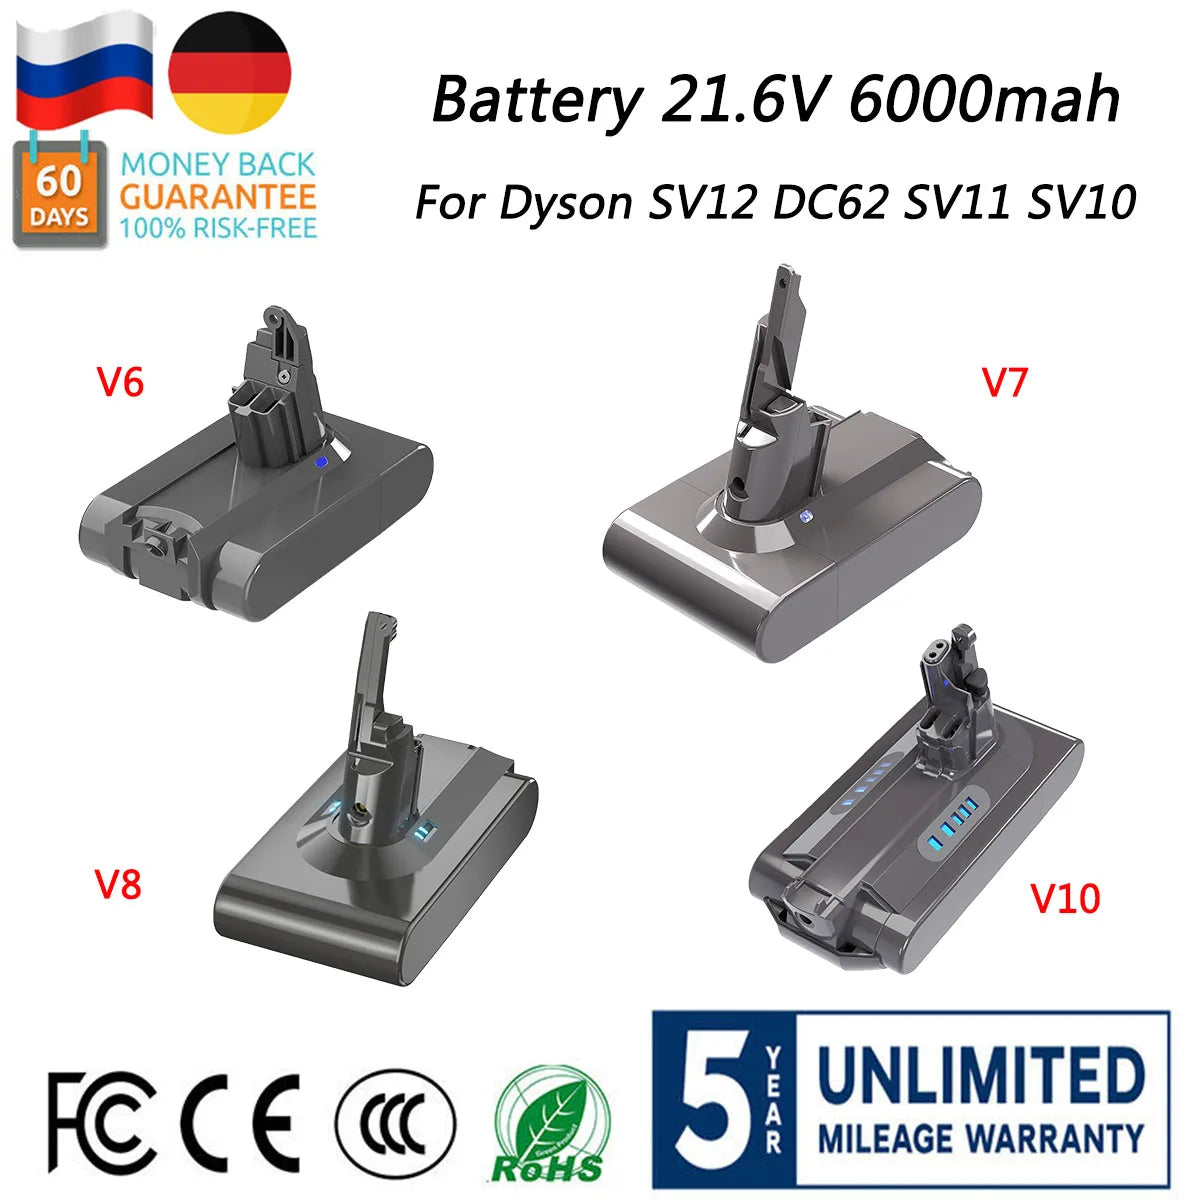 Dyson Batteri, 21,6V, 6000mAh - Optimerat för längre driftstid och hållbarhet